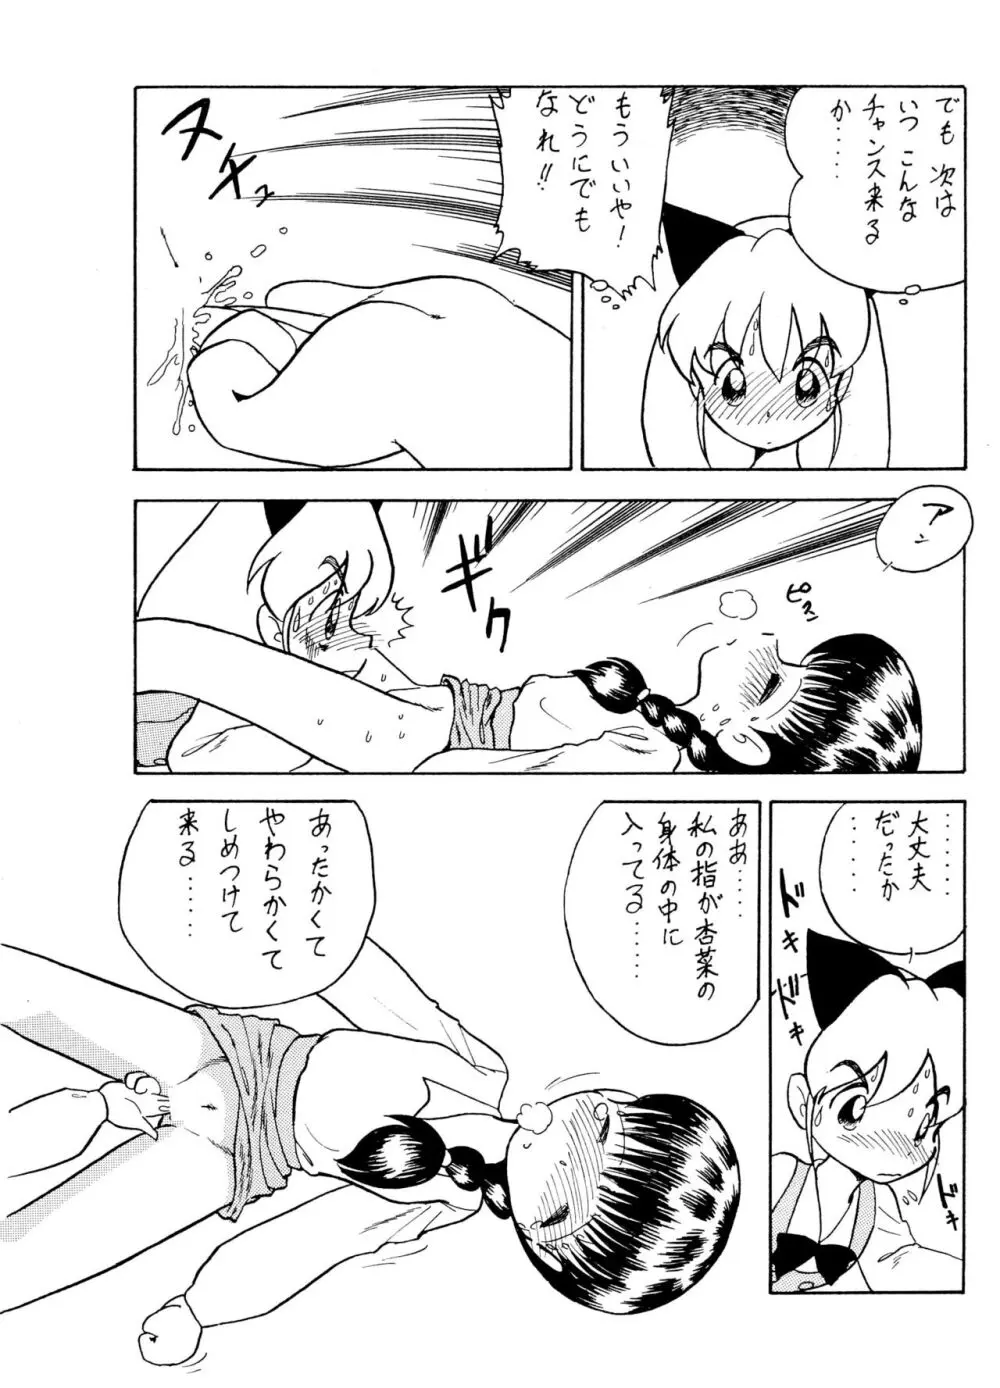 ANNA あ・ん・な・・・ - page33